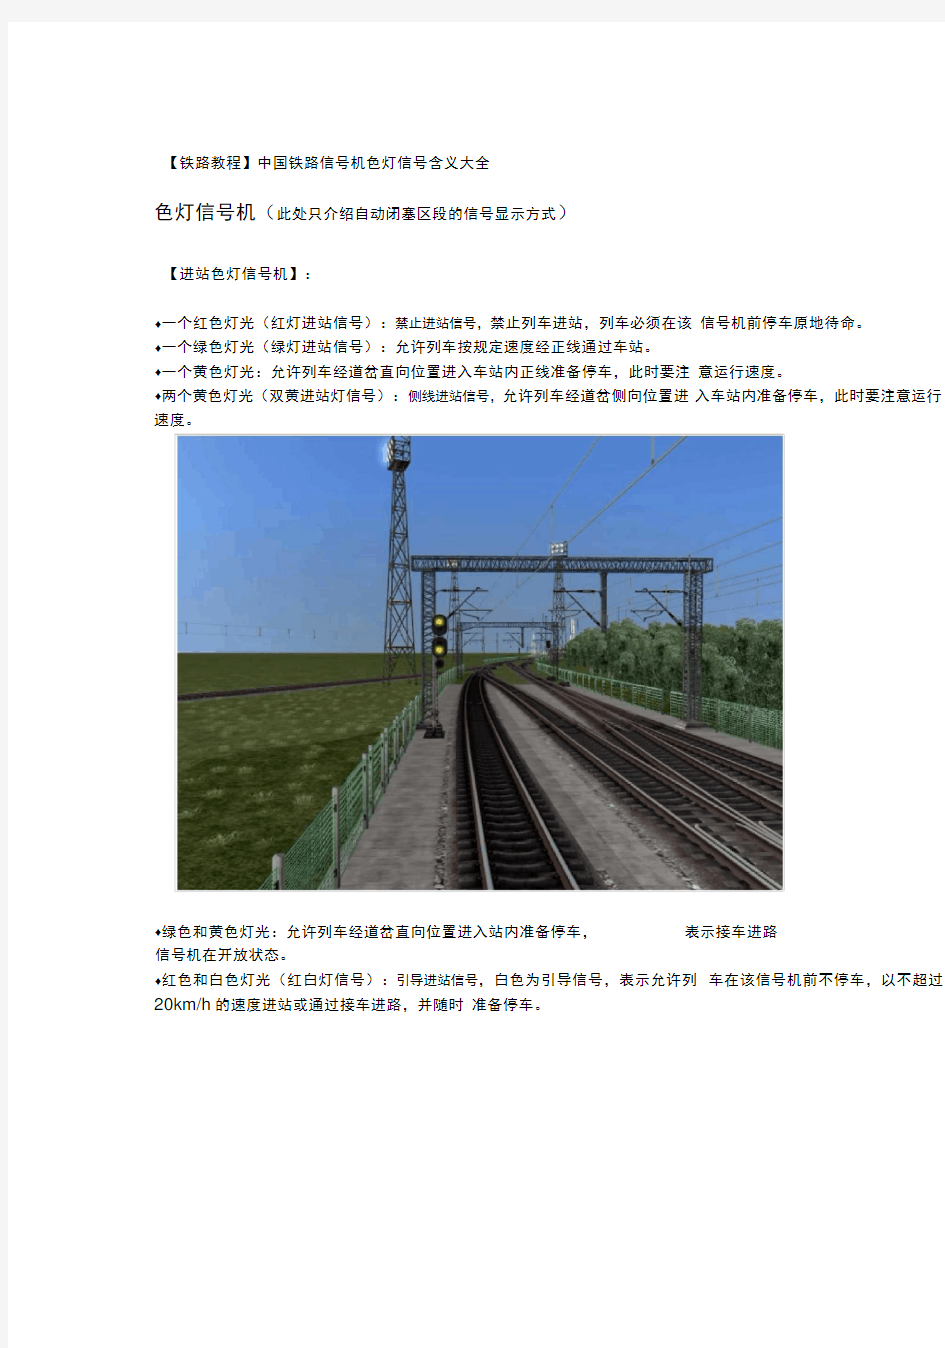 【铁路教程】中国铁路信号机色灯信号含义大全1